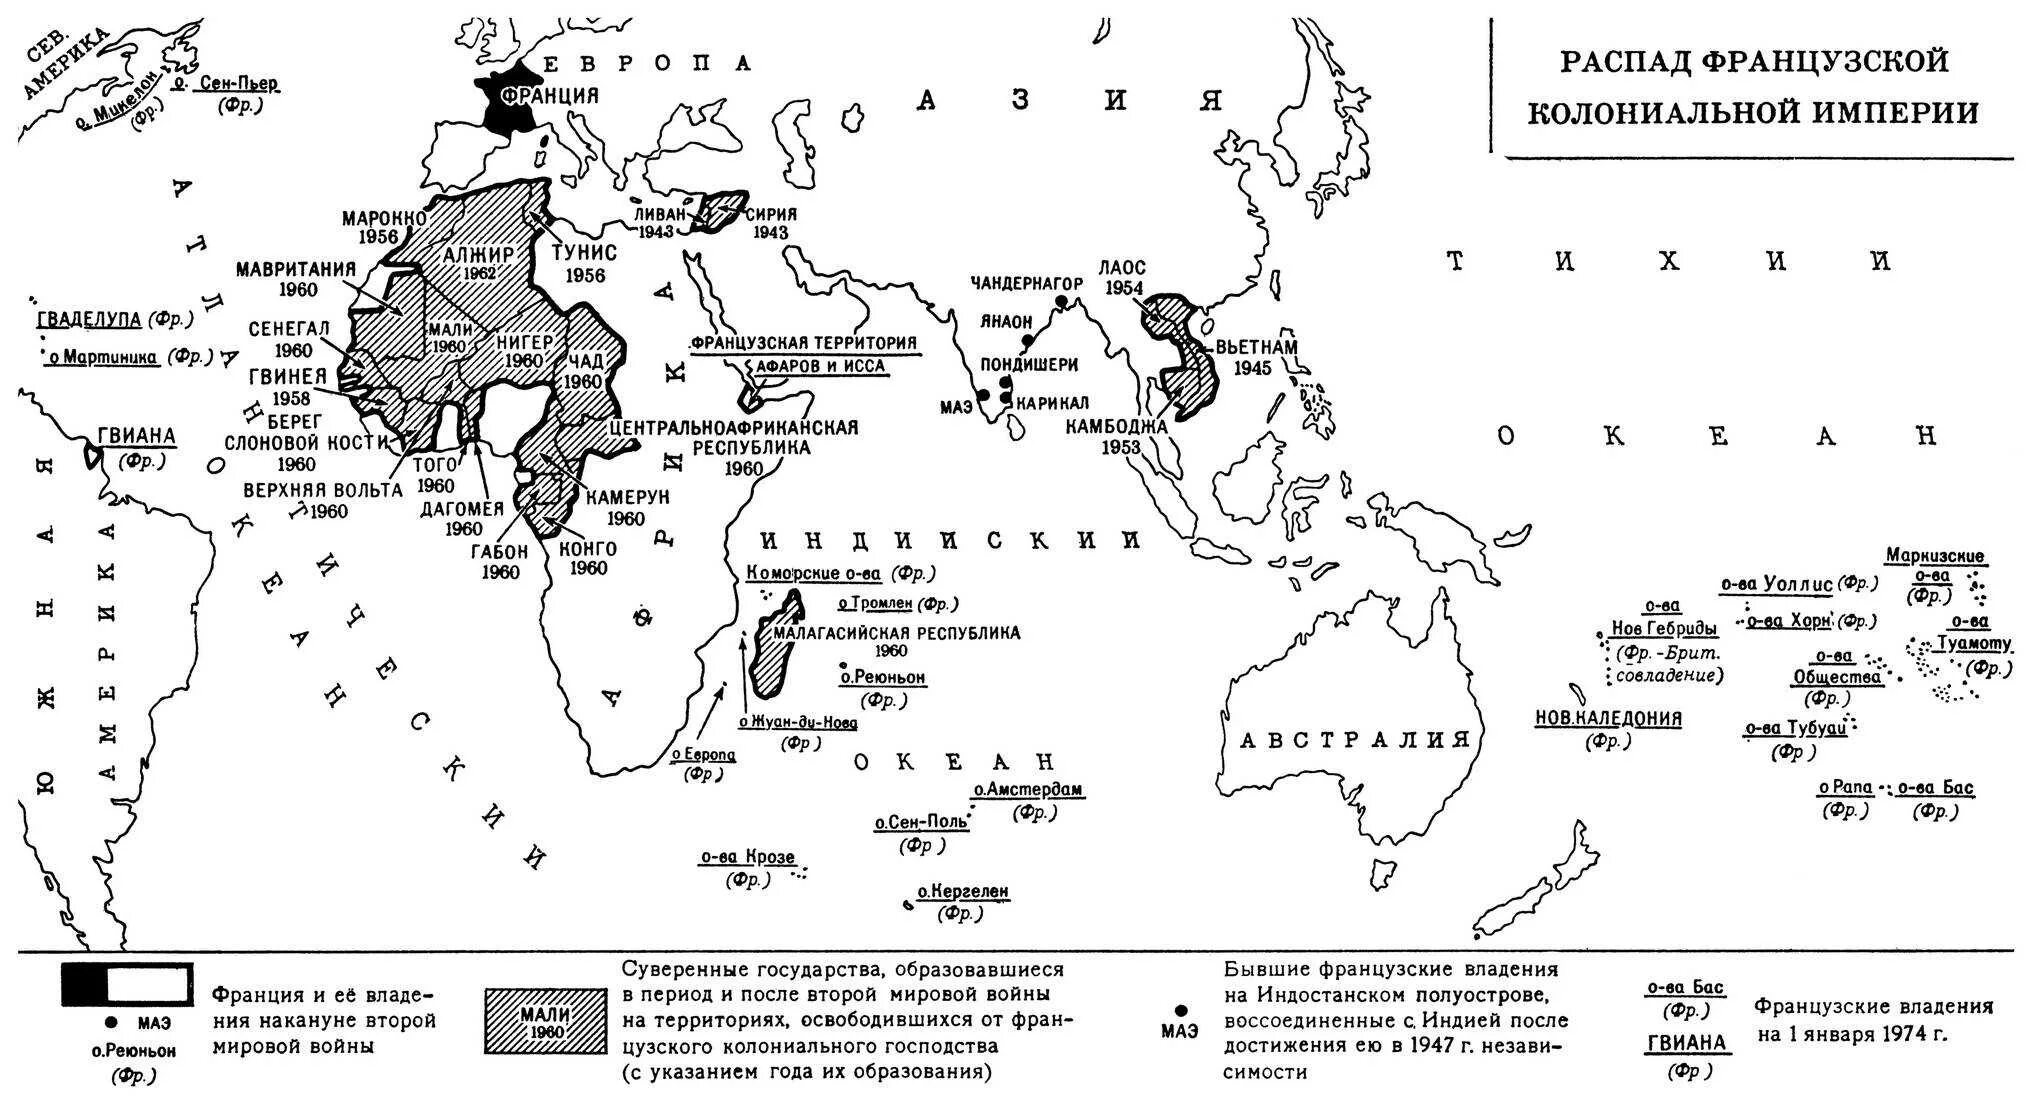 Колонии список стран. Колонии Франции карта 20 век. Карта Франции 1914 с колониями. Колонии Франции на карте. Карта колоний Франции 19 век.